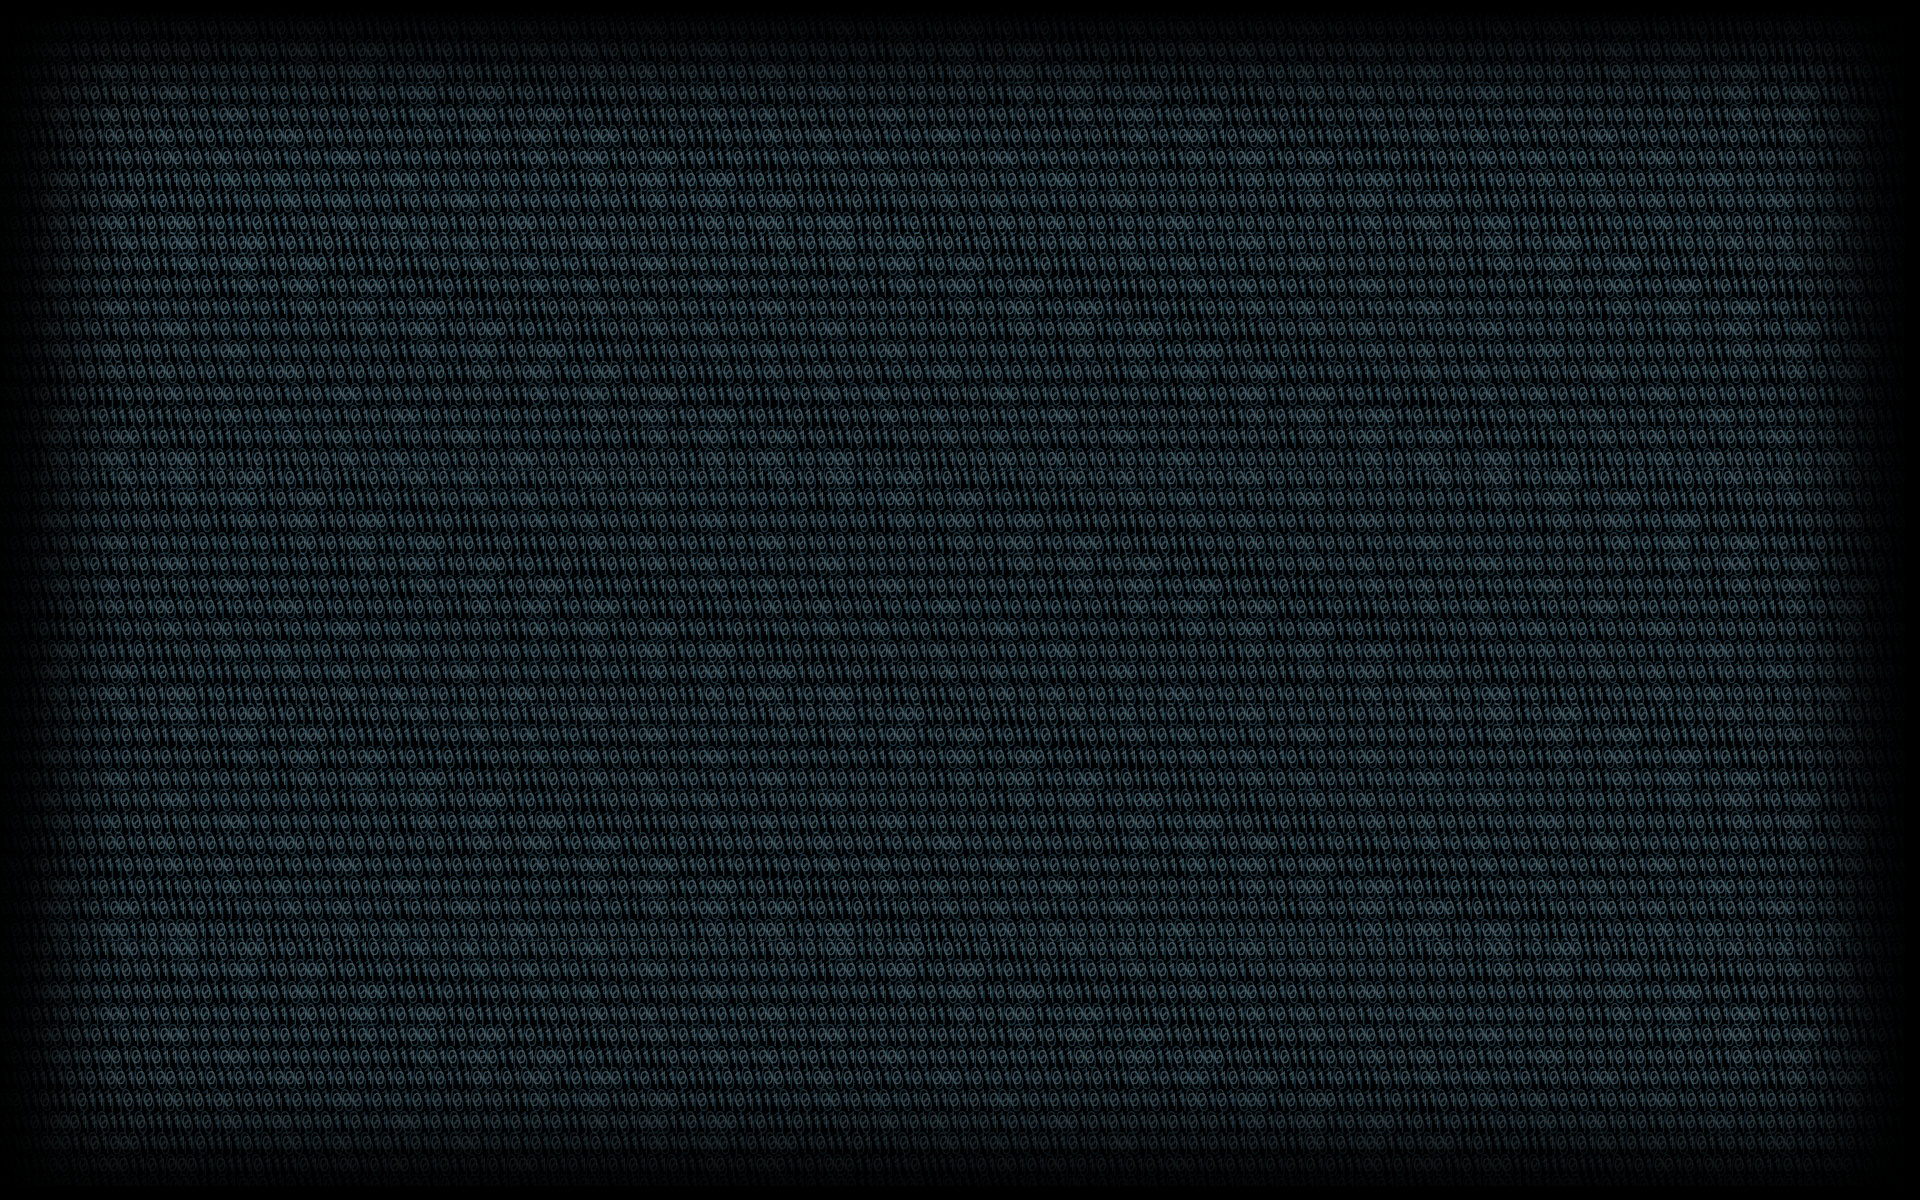 Черный фон код. Фон код 2560 на 1485. Черный премиум фон с кодом. Код на черном фоне. Картинка 333 х 222 код фон.